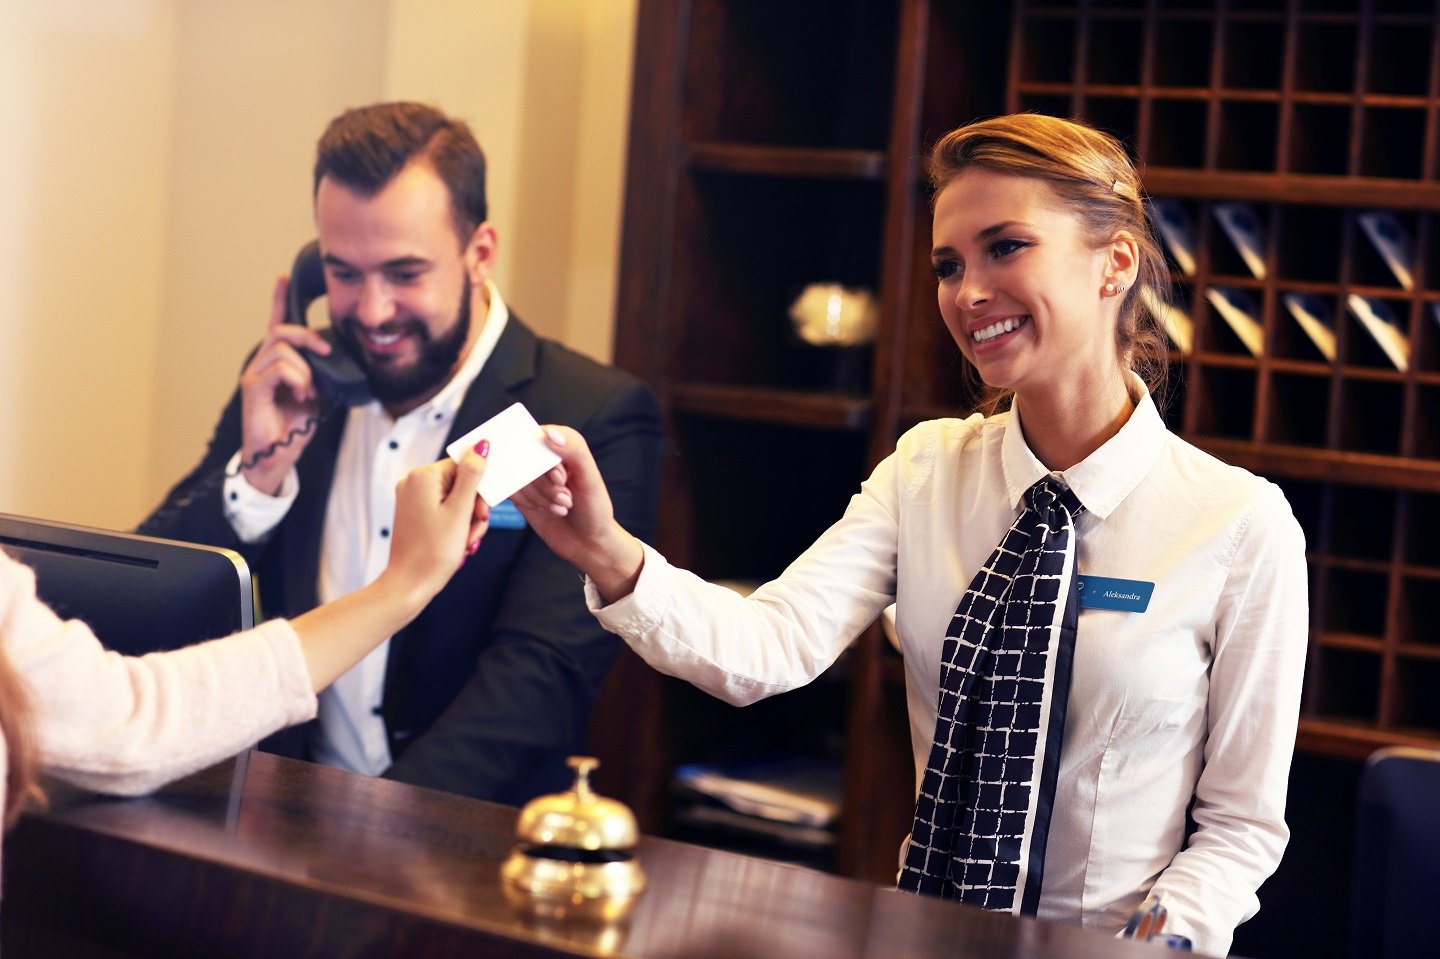 Berufe im Gastgewerbe: Top 7 Gastgewerbe-Jobs für Hotel-Aficionados